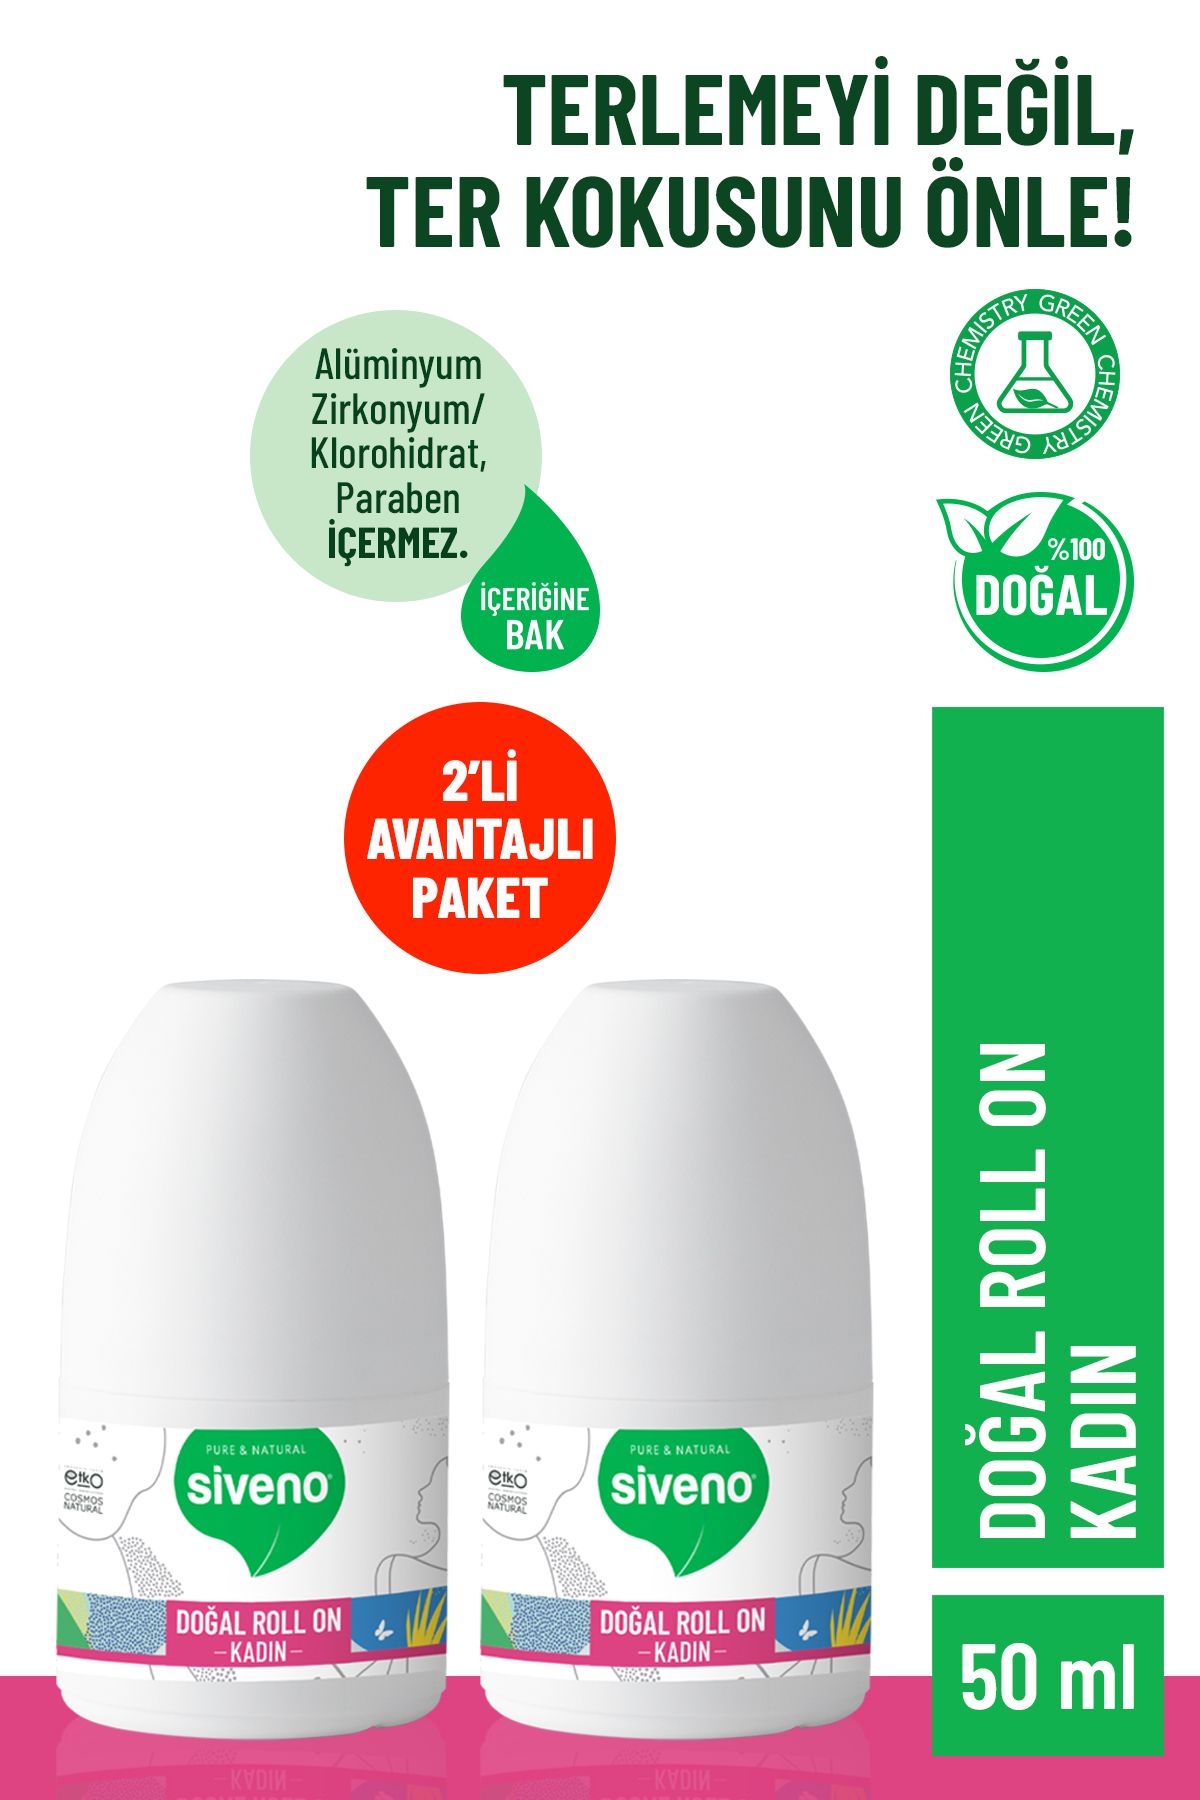 Siveno %100 Doğal Roll-On Kadın Deodorant Ter Kokusu Önleyici Bitkisel Leke Bırakmayan Vegan 50 ml X 2 Adet